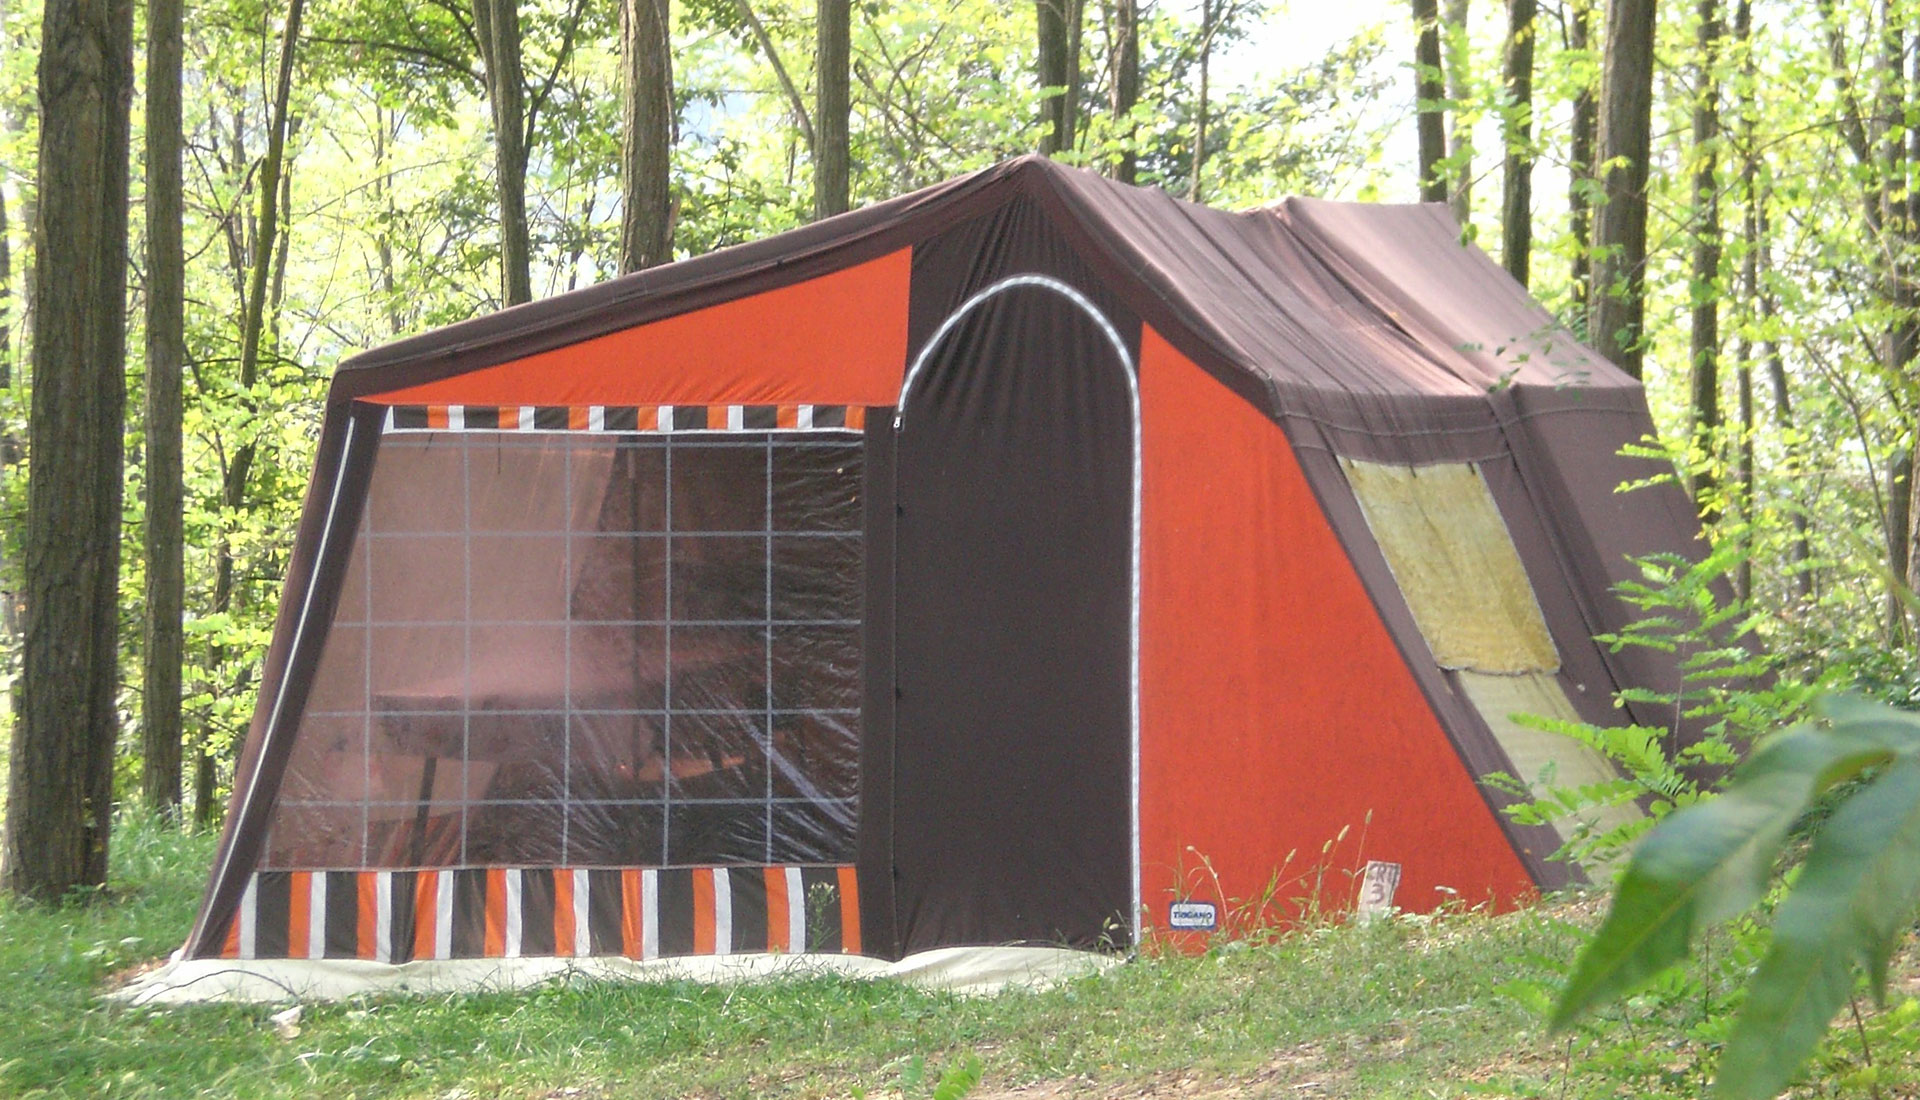 Ammira lo spettacolo della natura… soggiornando con la tua tenda in camping